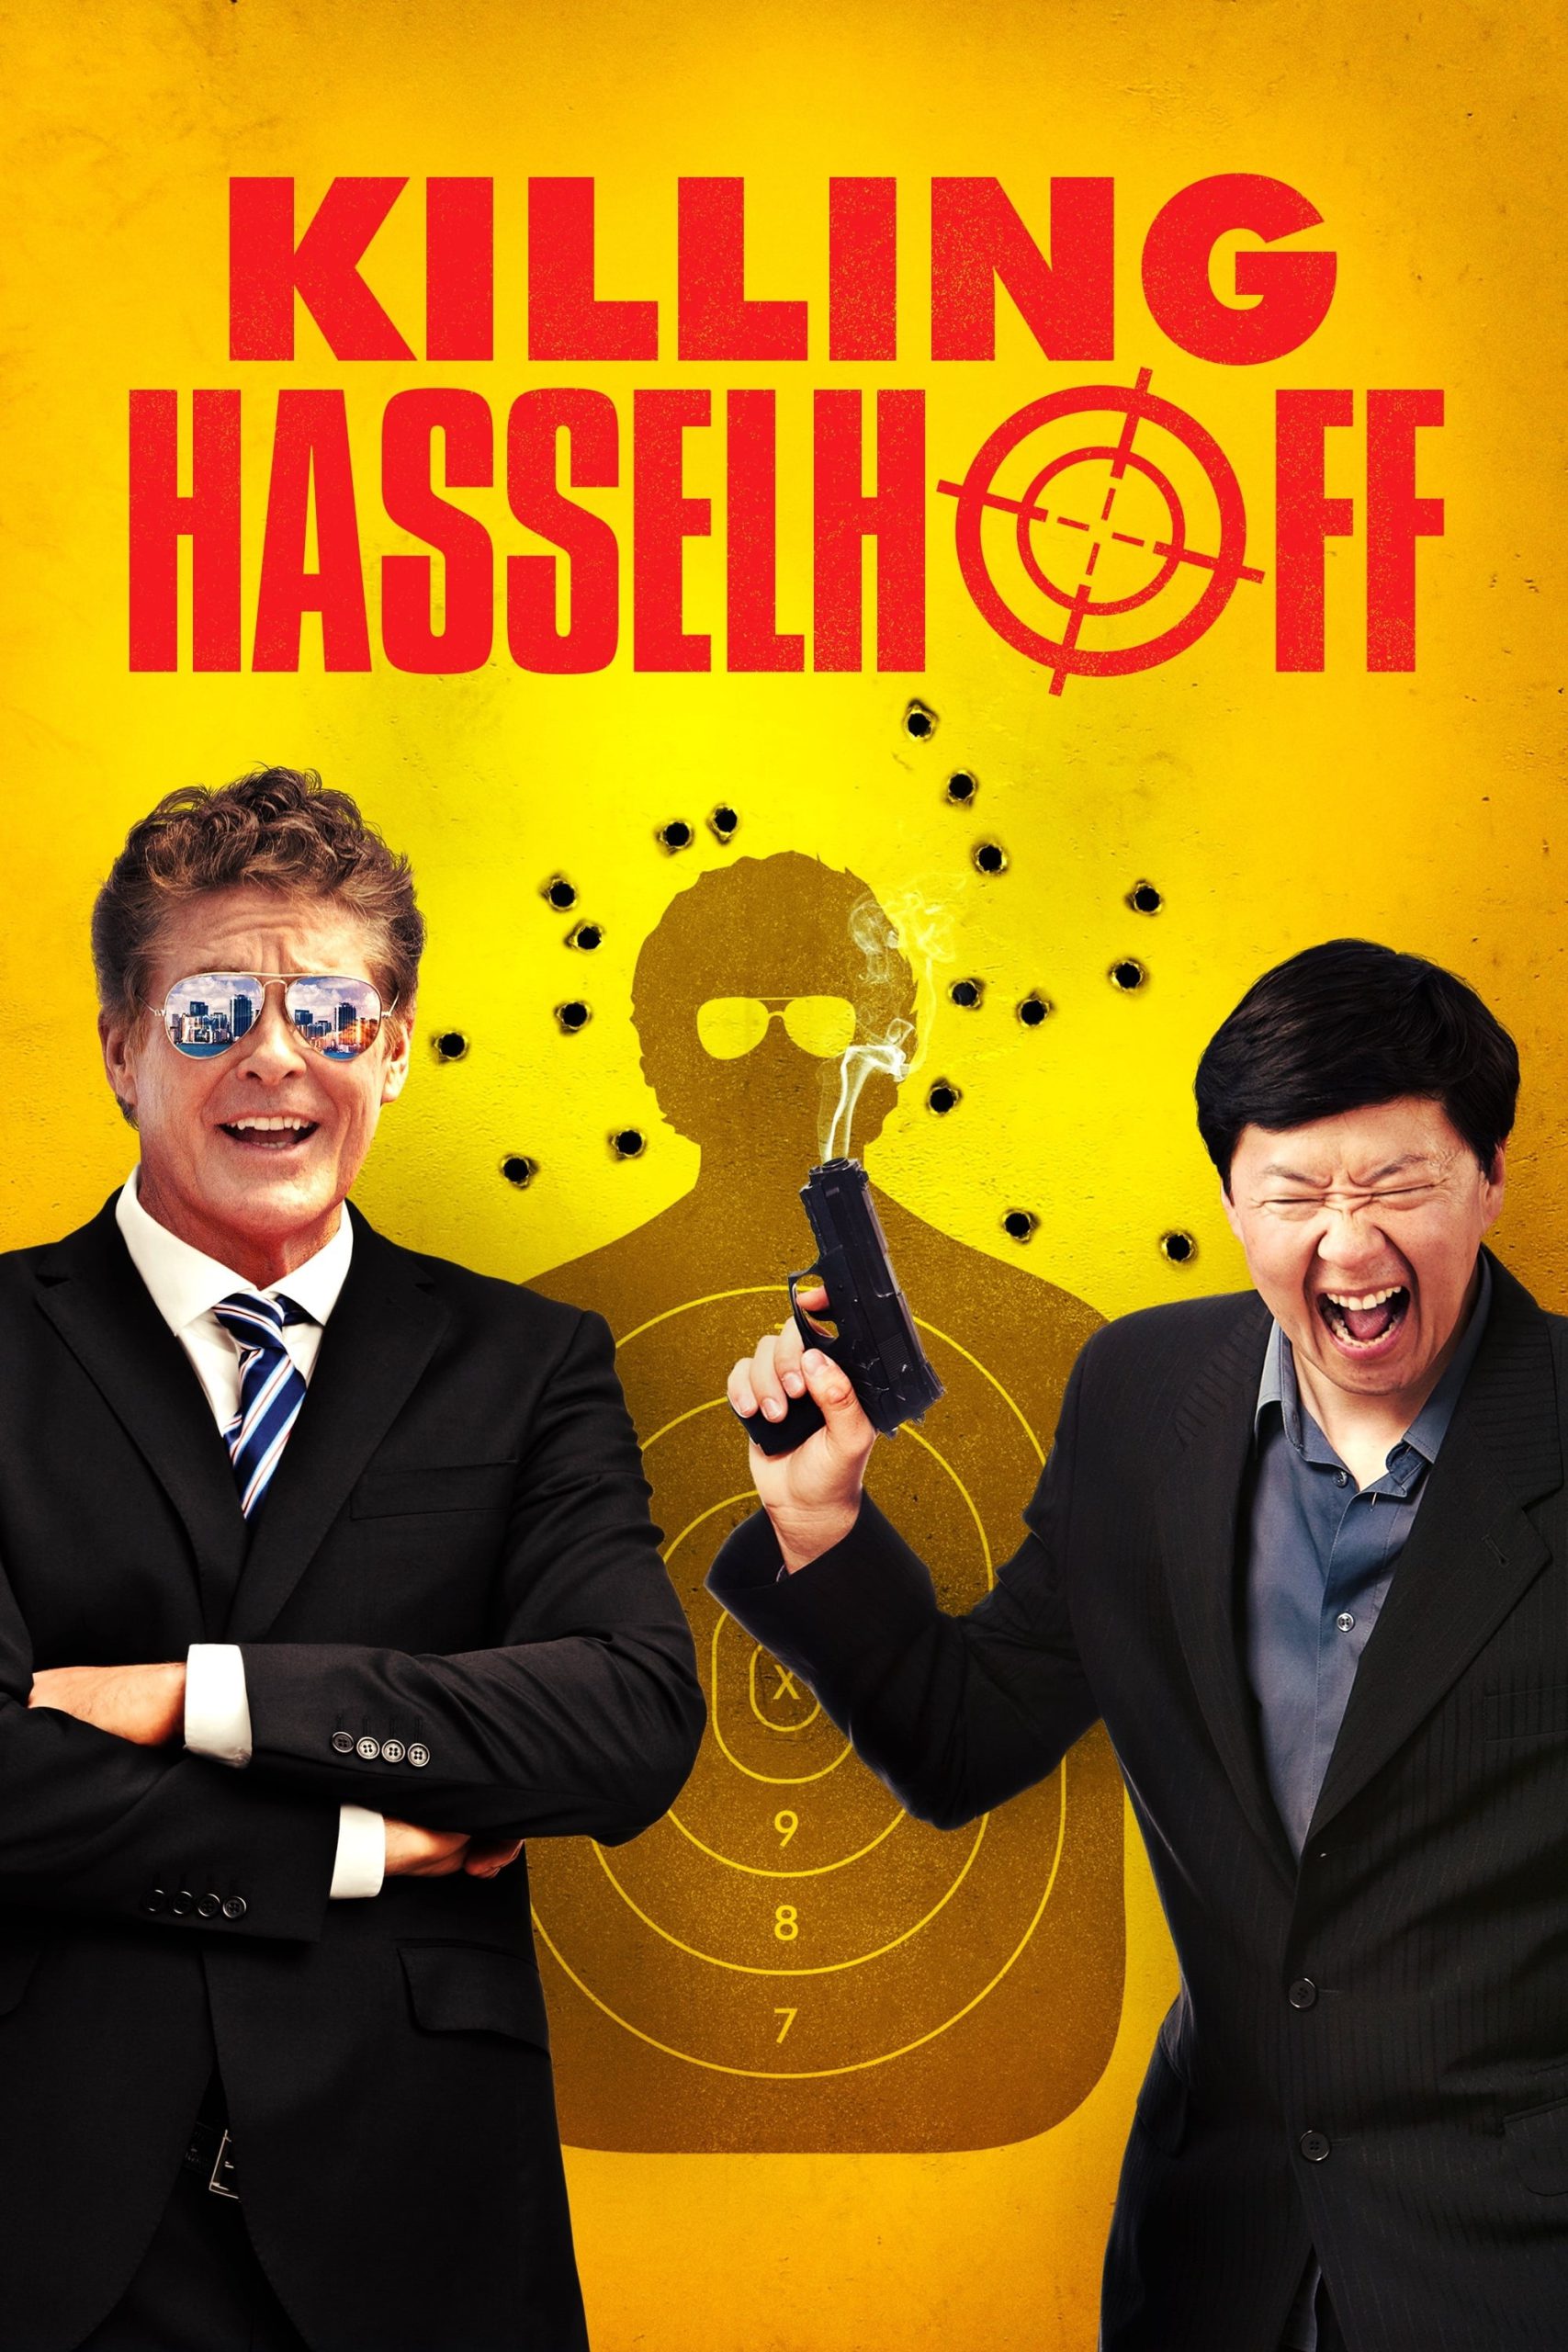 Killing Hasselhoff [HD] (2017)